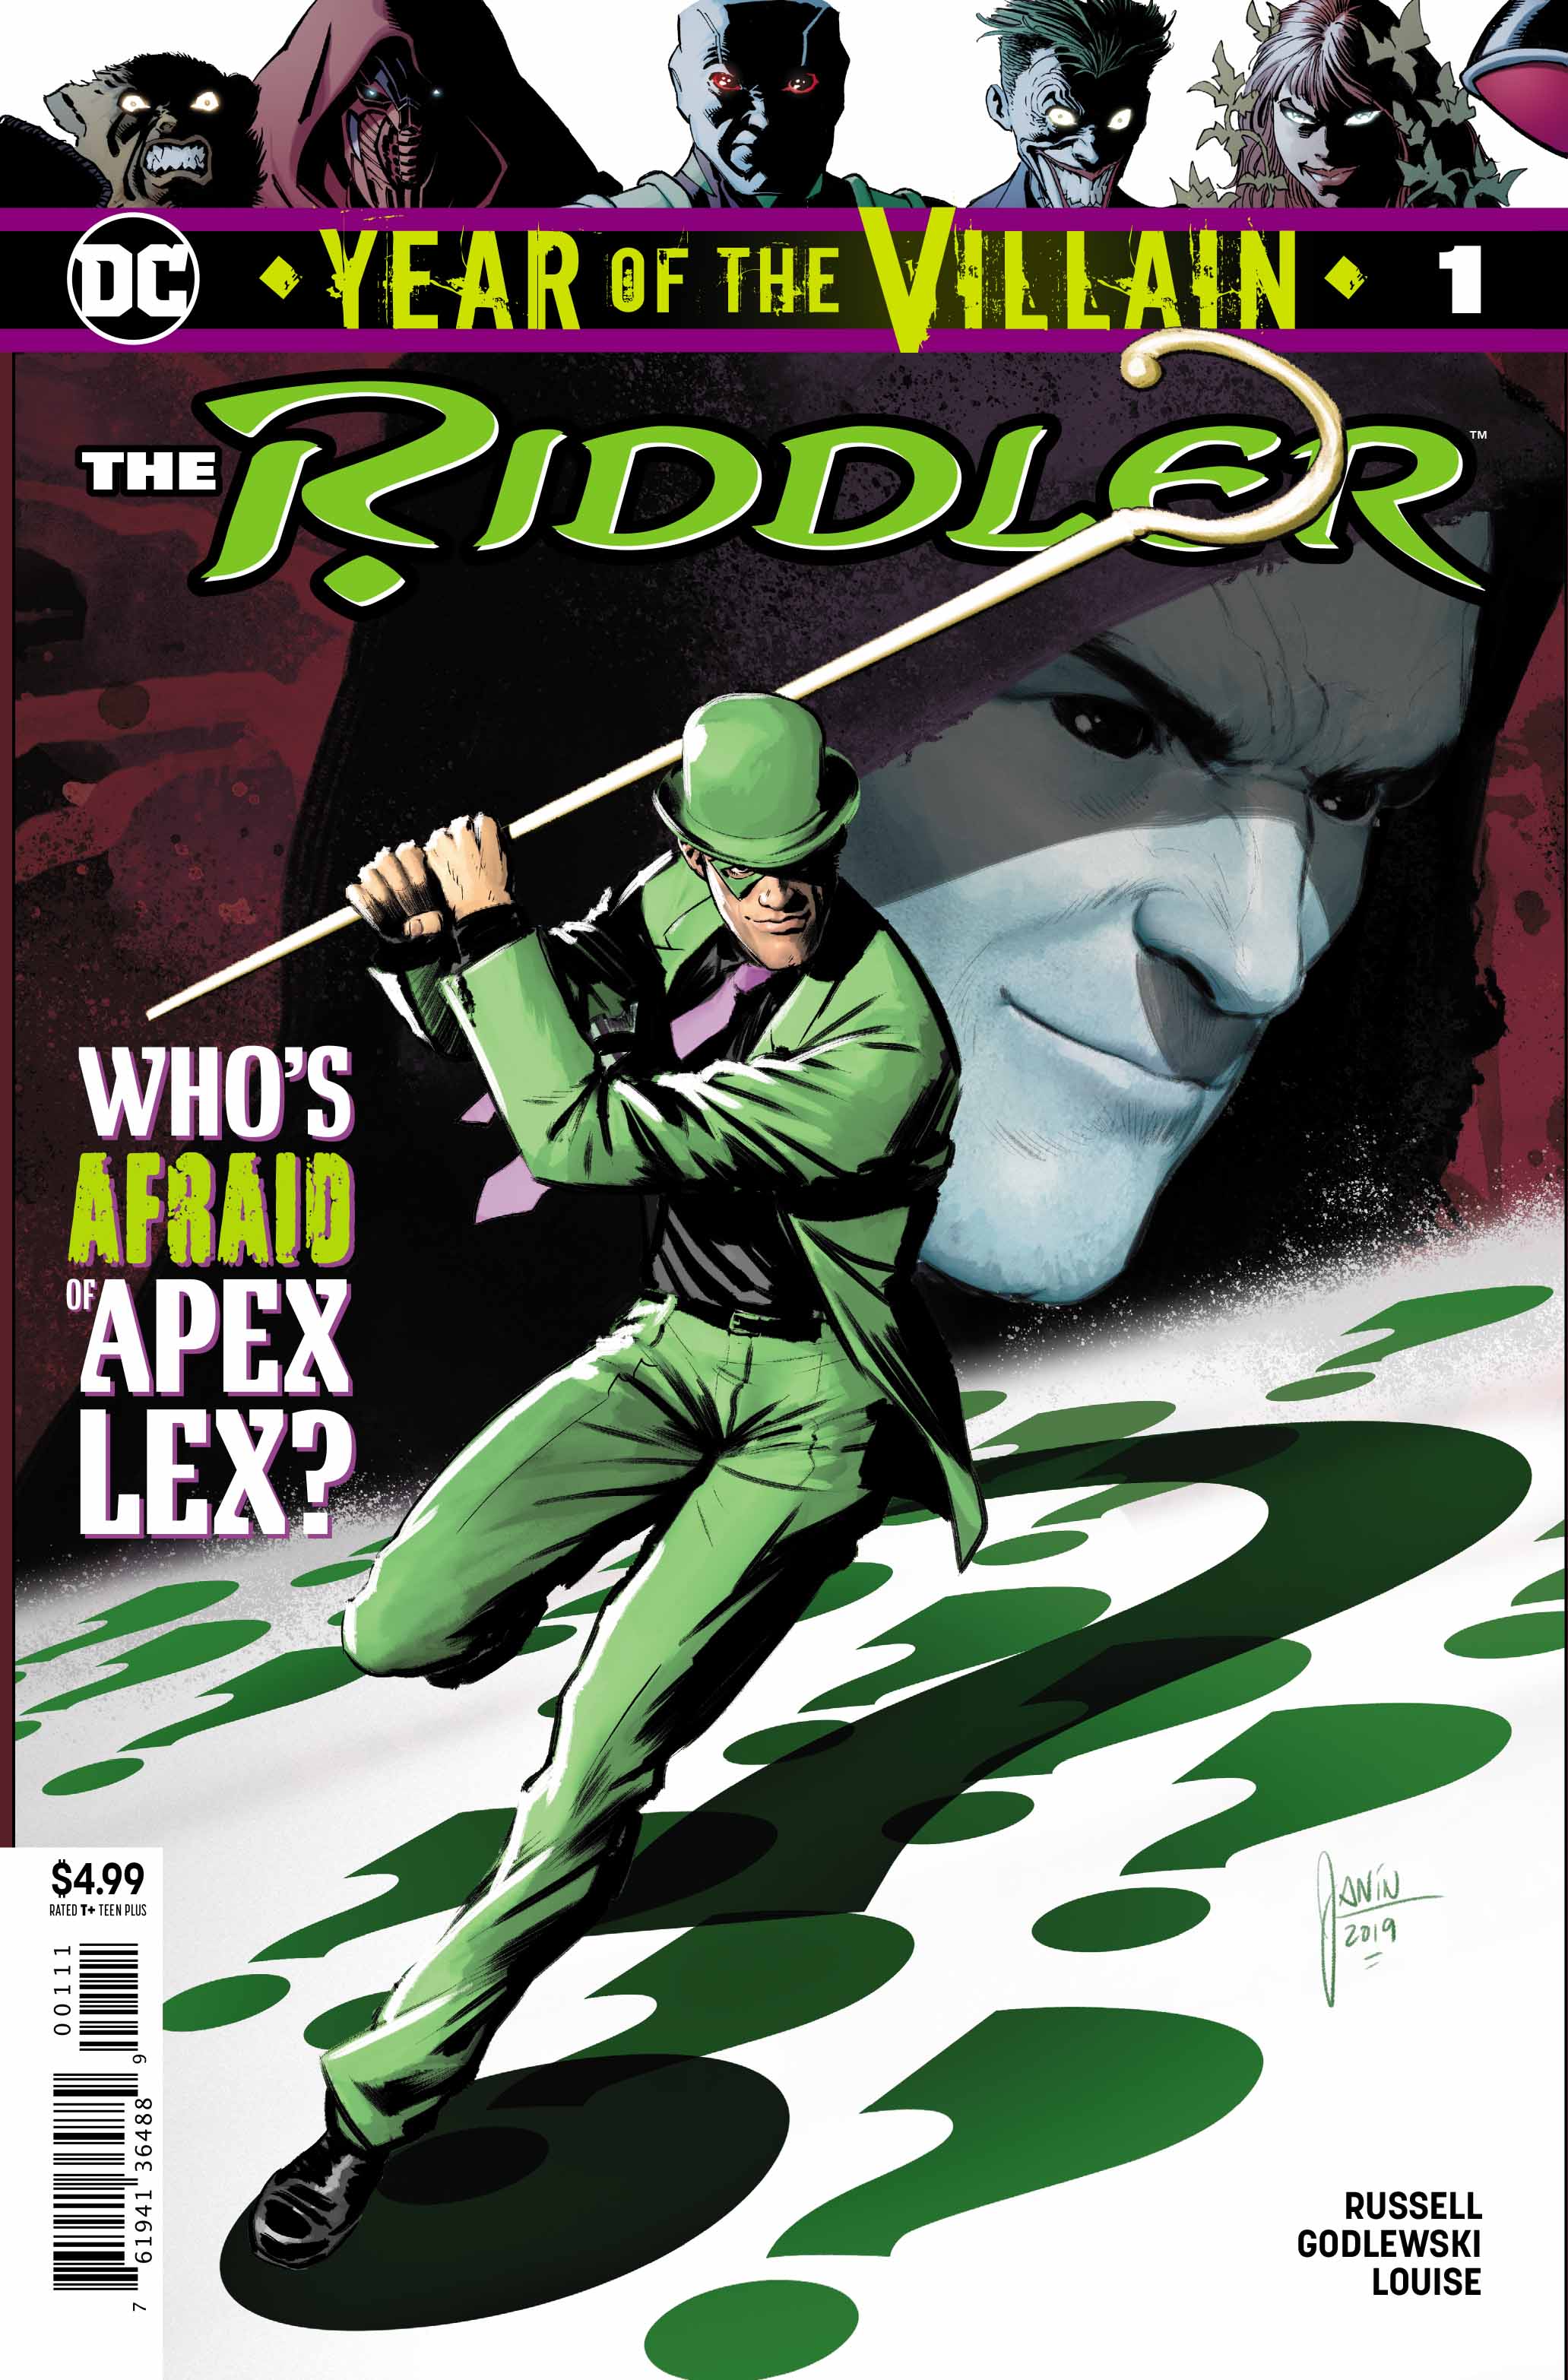 The Riddler YOTV cover